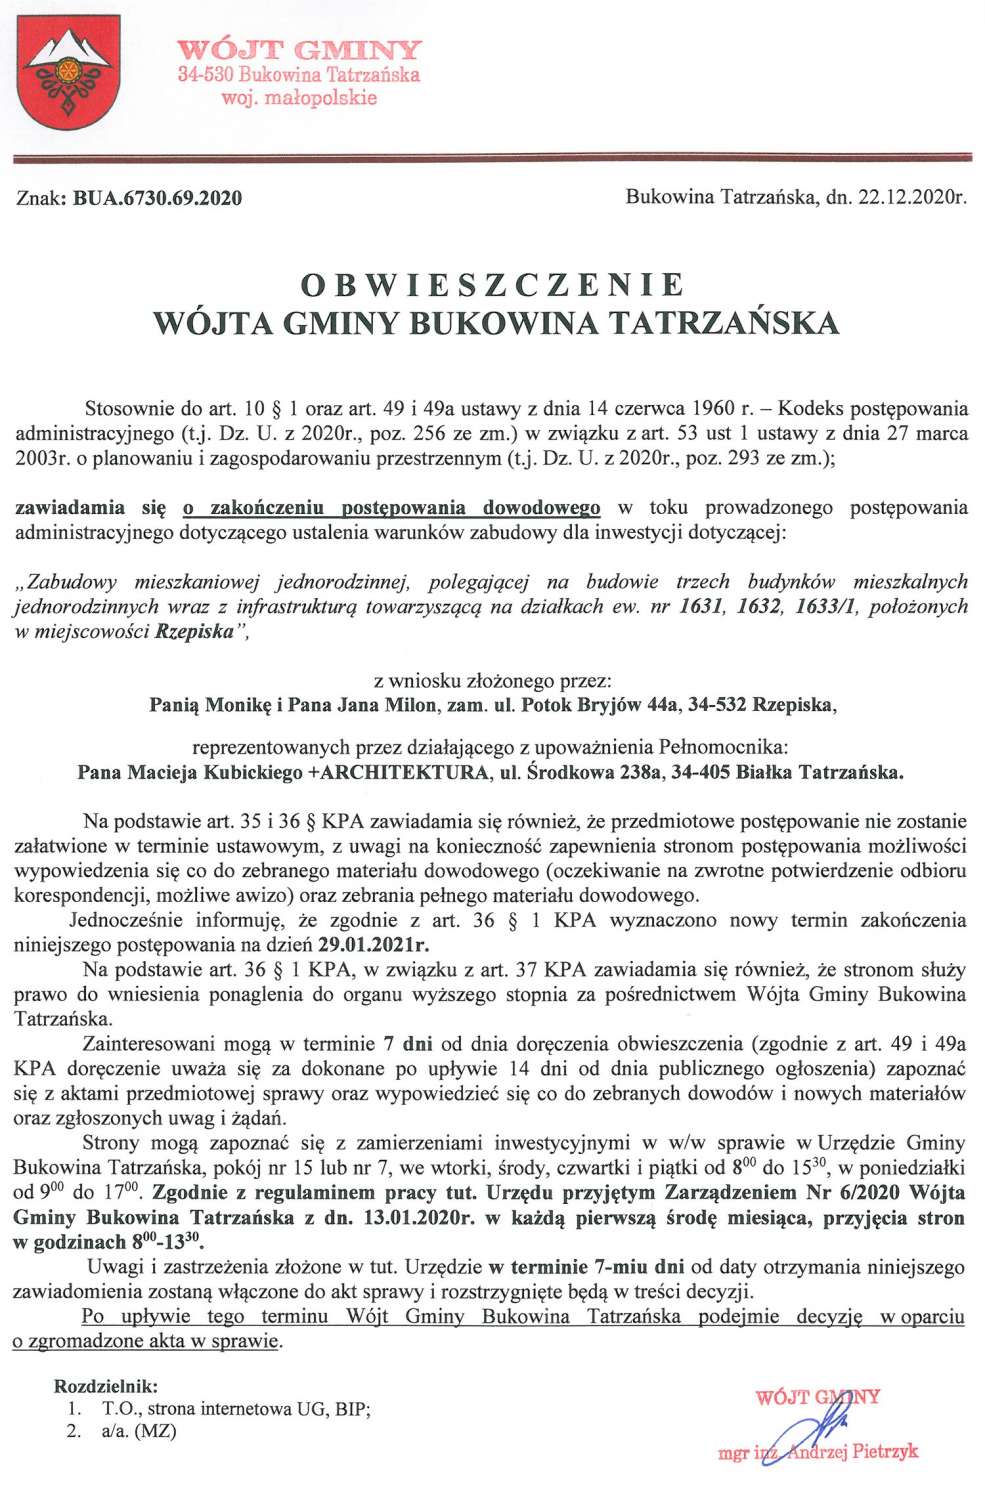 Obwieszczenie Wójta Gminy Bukowina Tatrzańska BUA 6730.69.2020